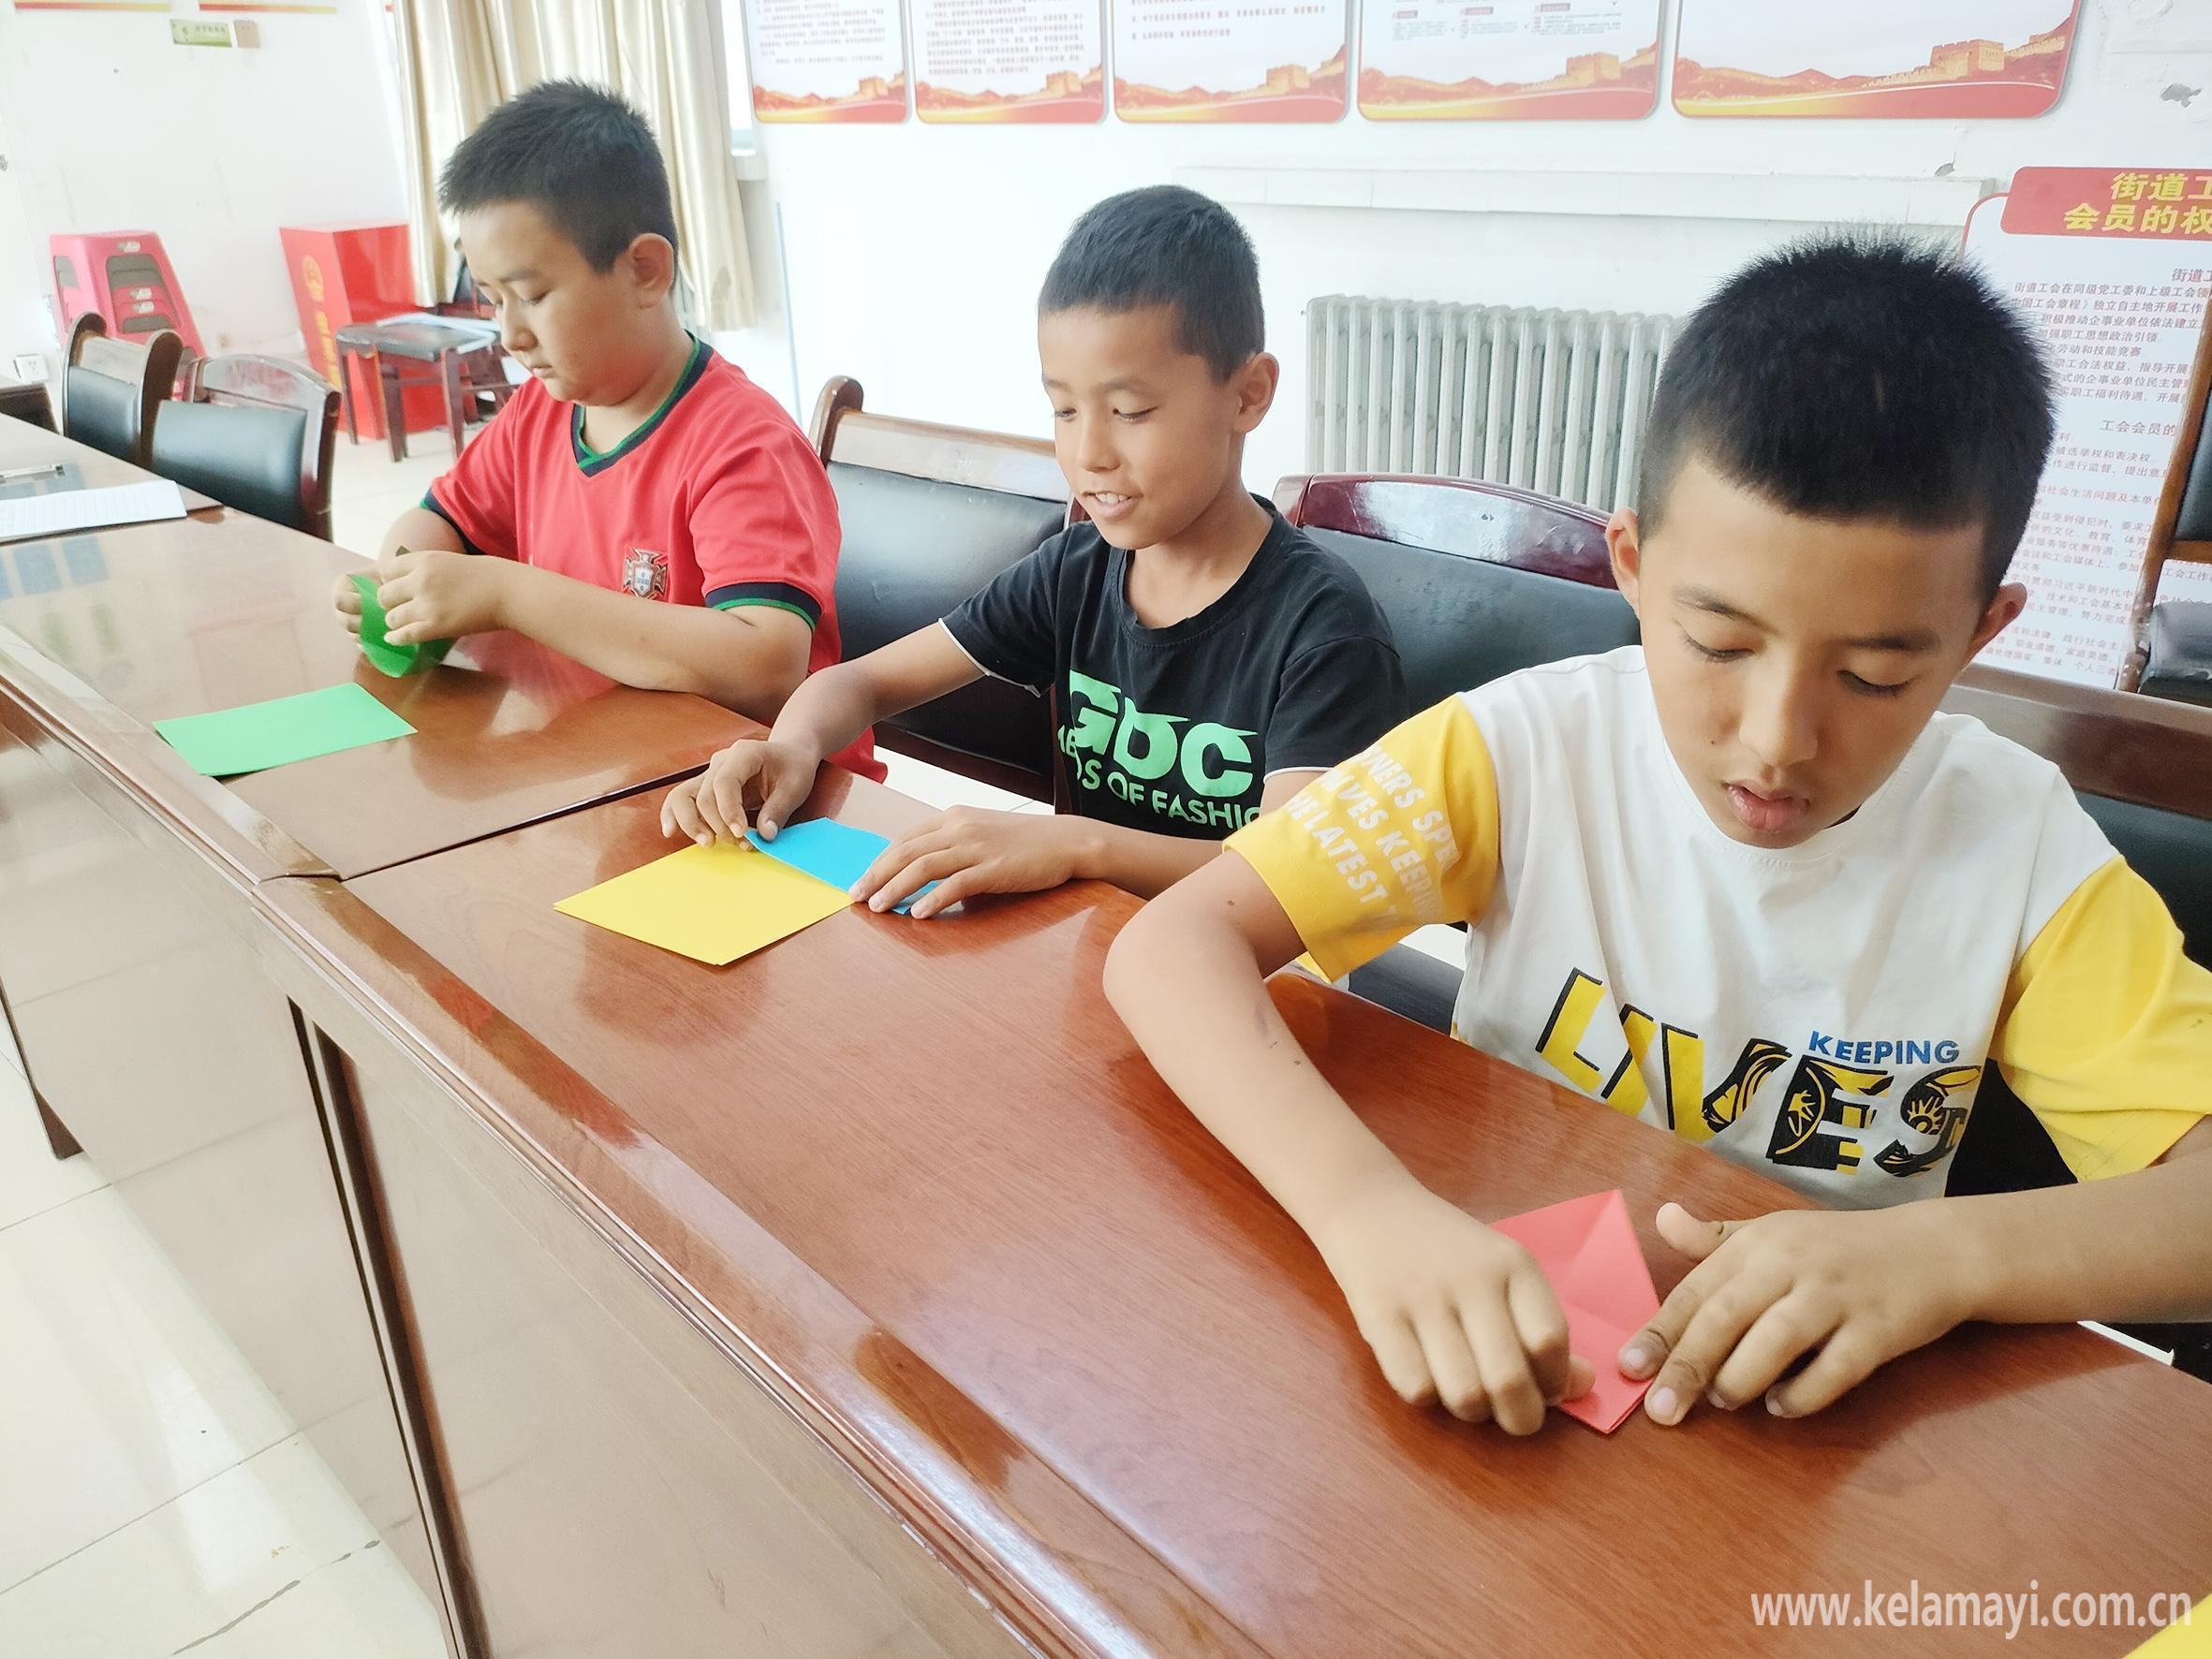 杨丹丹 摄5月31日,白碱滩区五新社区与市第十六小学,晨光幼儿园开展